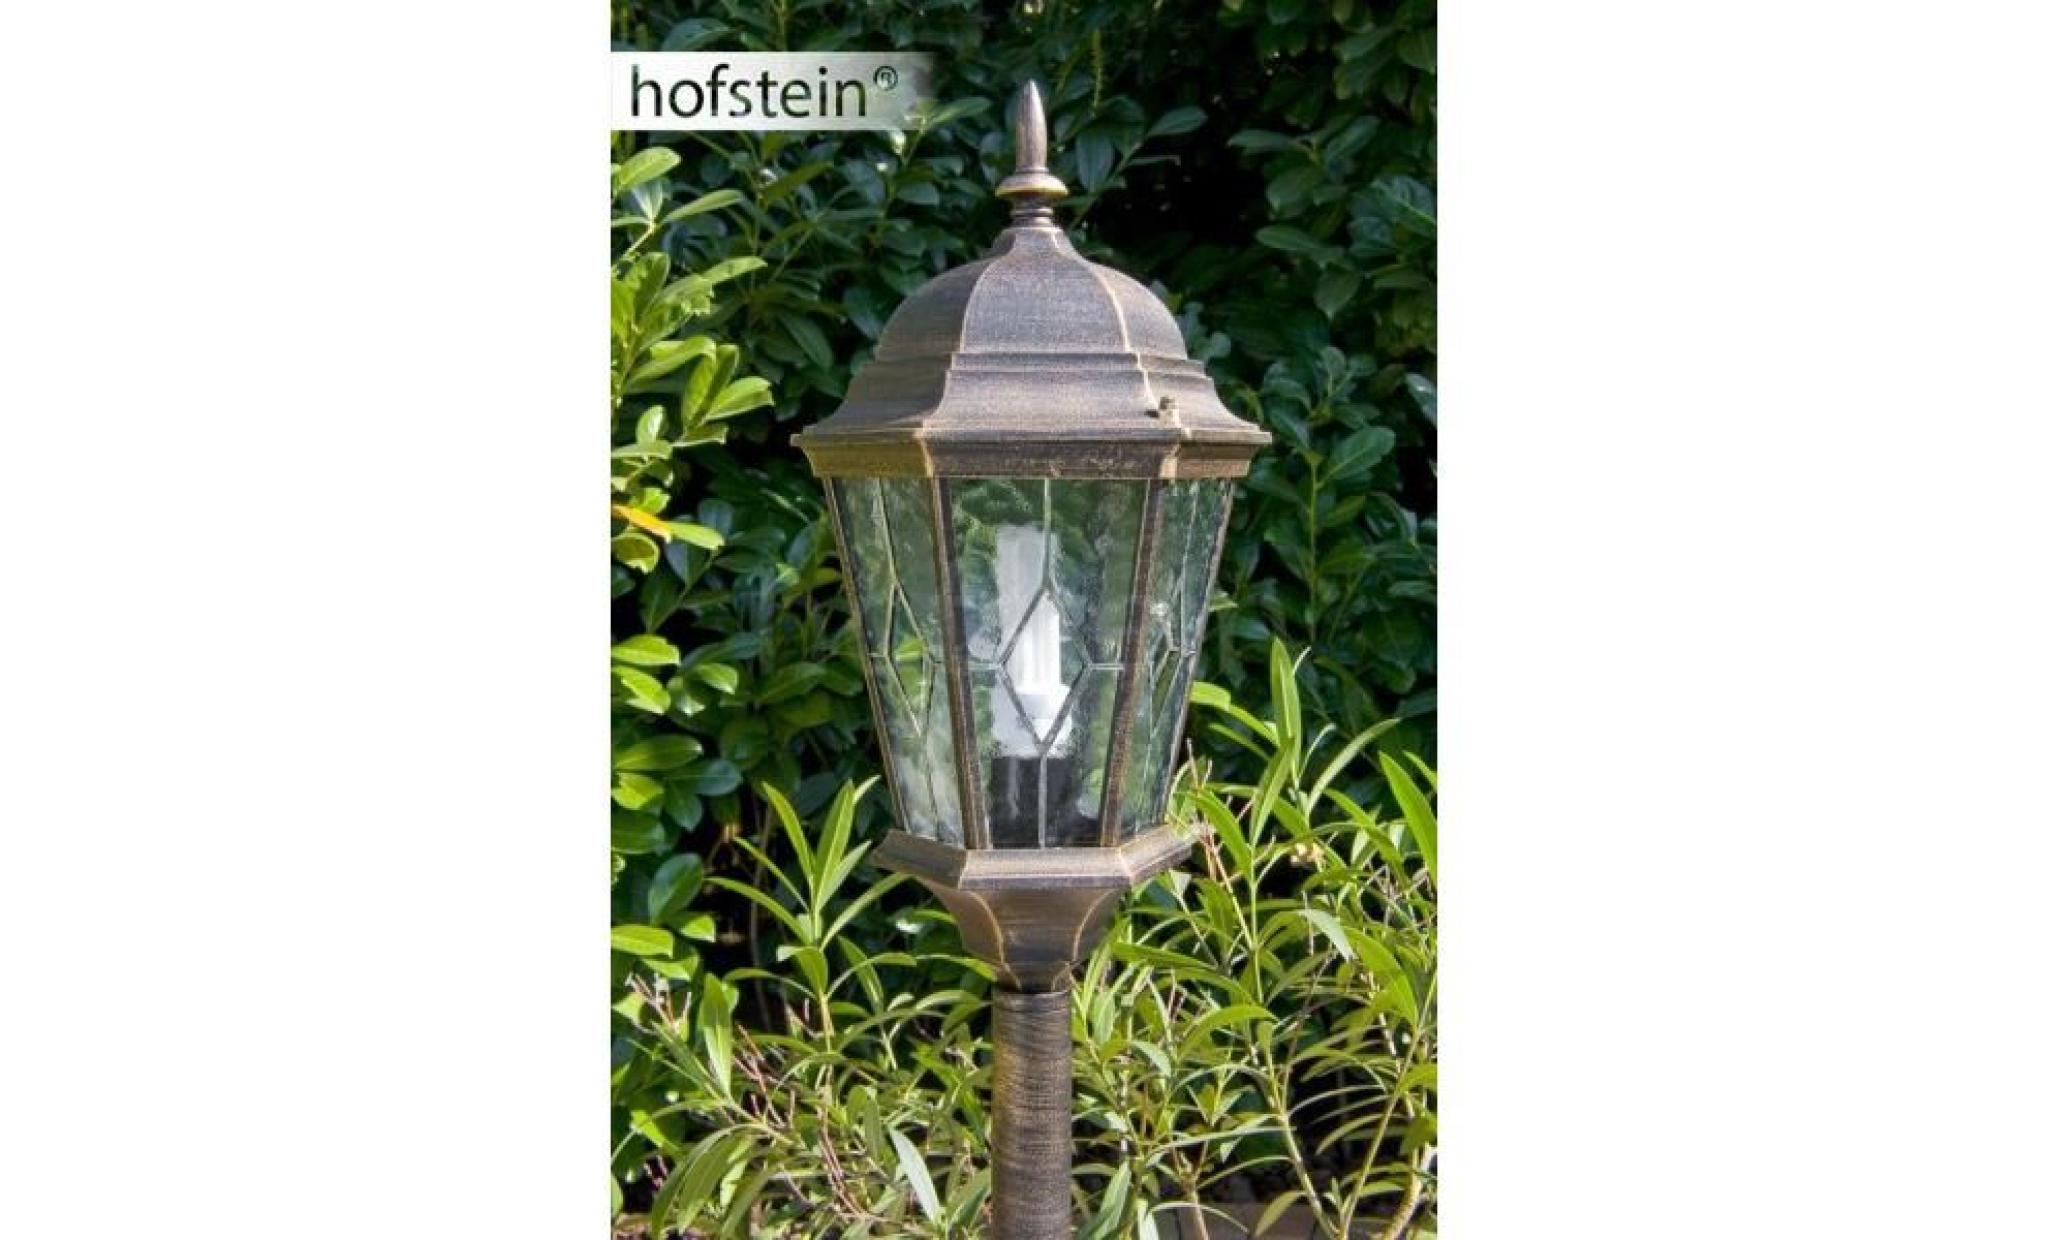 lampadaire d'extérieur hofstein hongkong marron/or